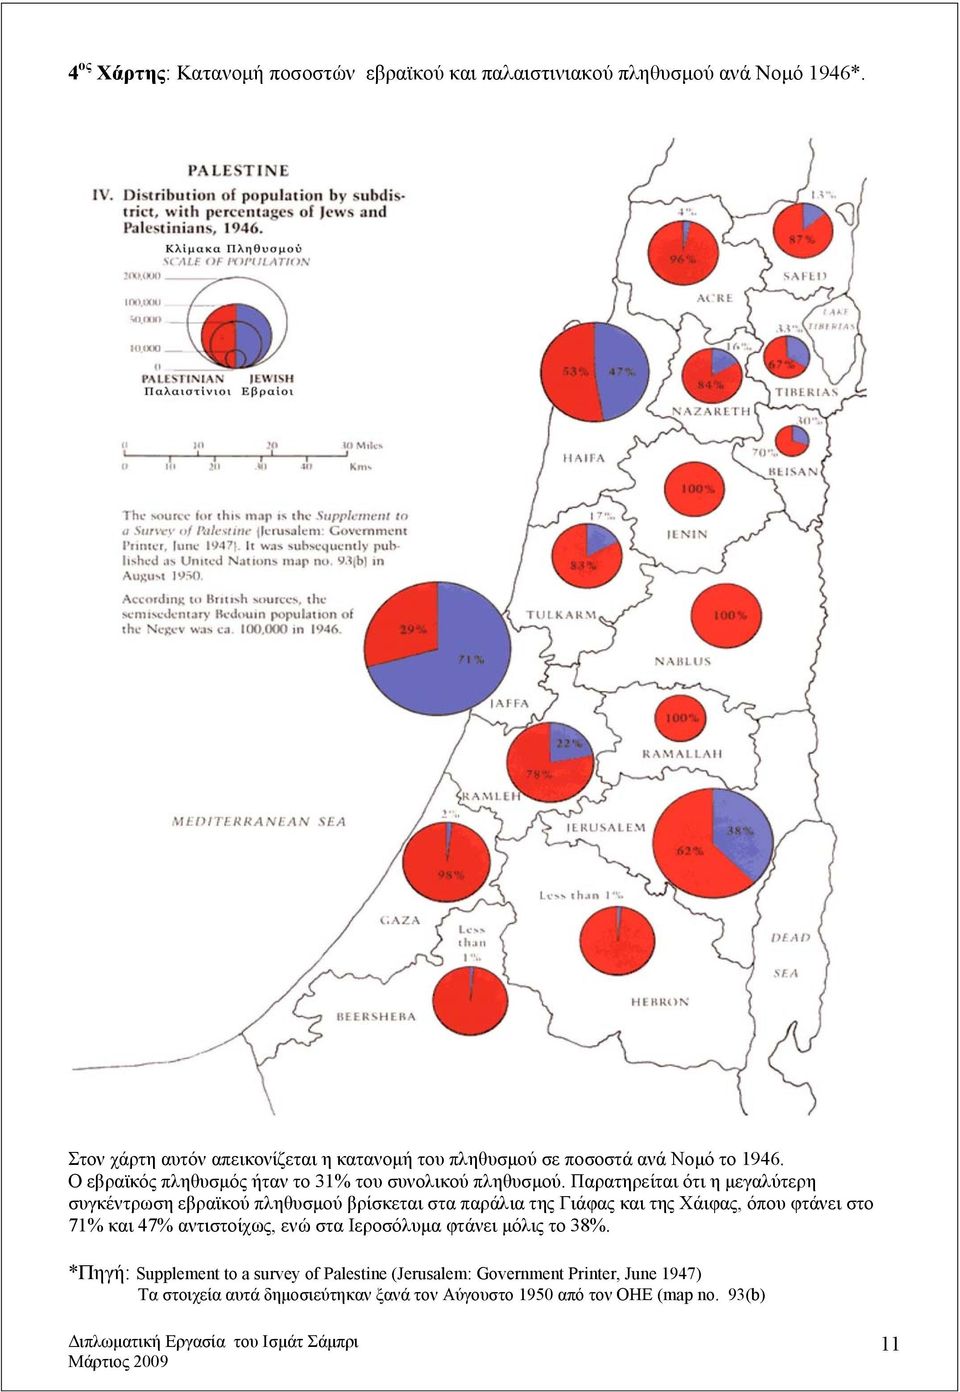 Παρατηρείται ότι η μεγαλύτερη συγκέντρωση εβραϊκού πληθυσμού βρίσκεται στα παράλια της Γιάφας και της Χάιφας, όπου φτάνει στο 71% και 47%